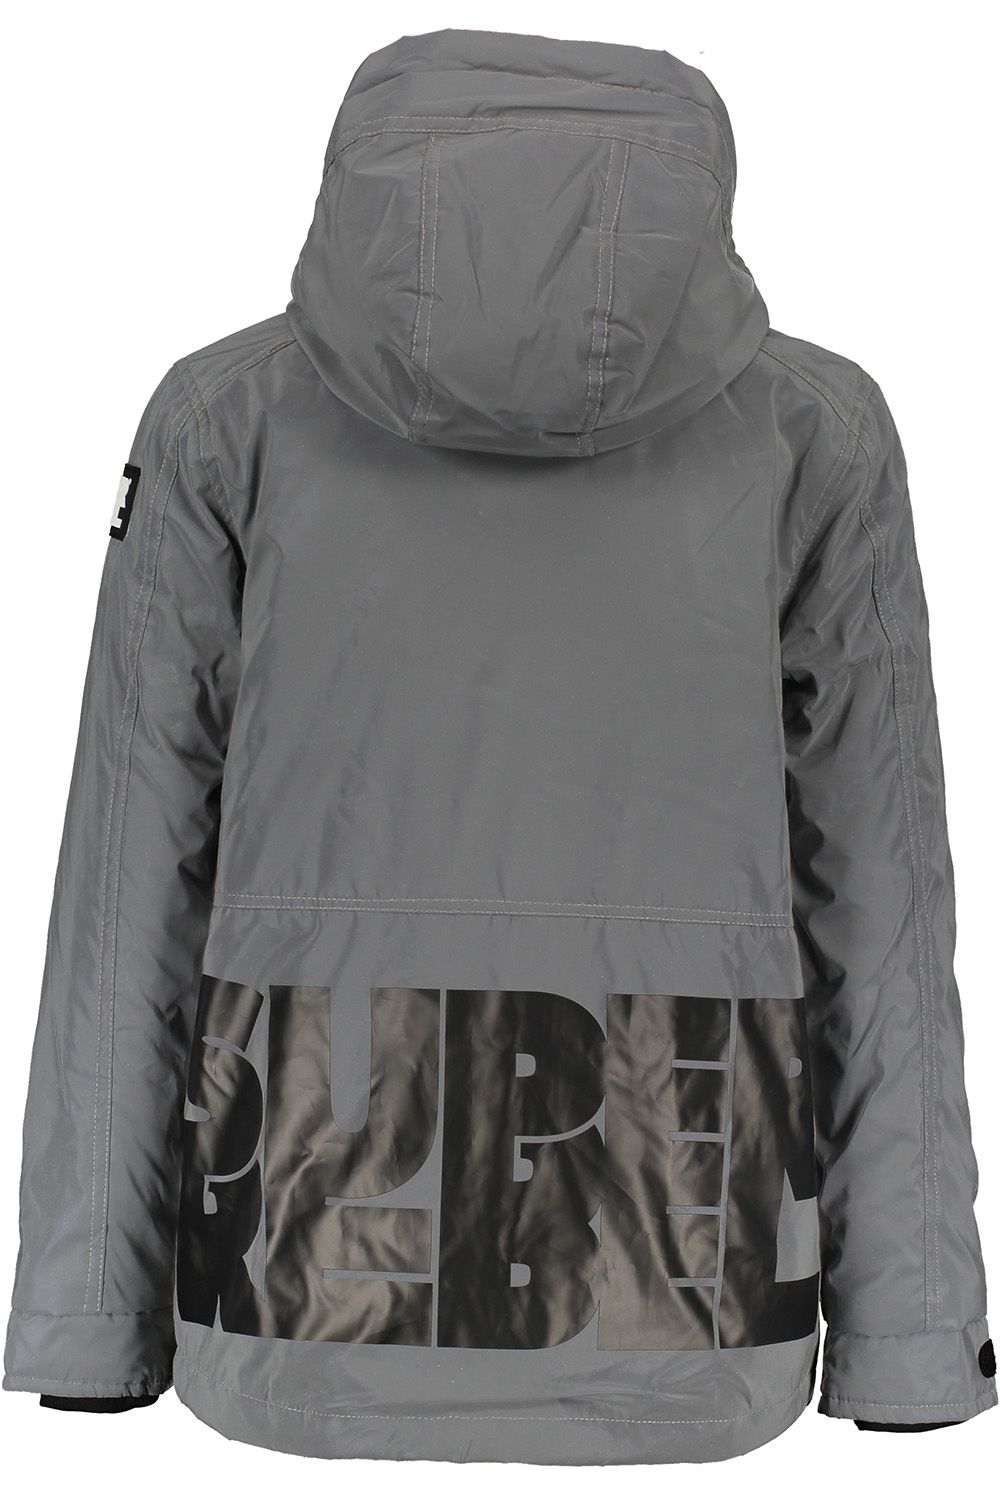 Куртка Super Rebel, размер 140, цвет серый R909-6281 - фото 2